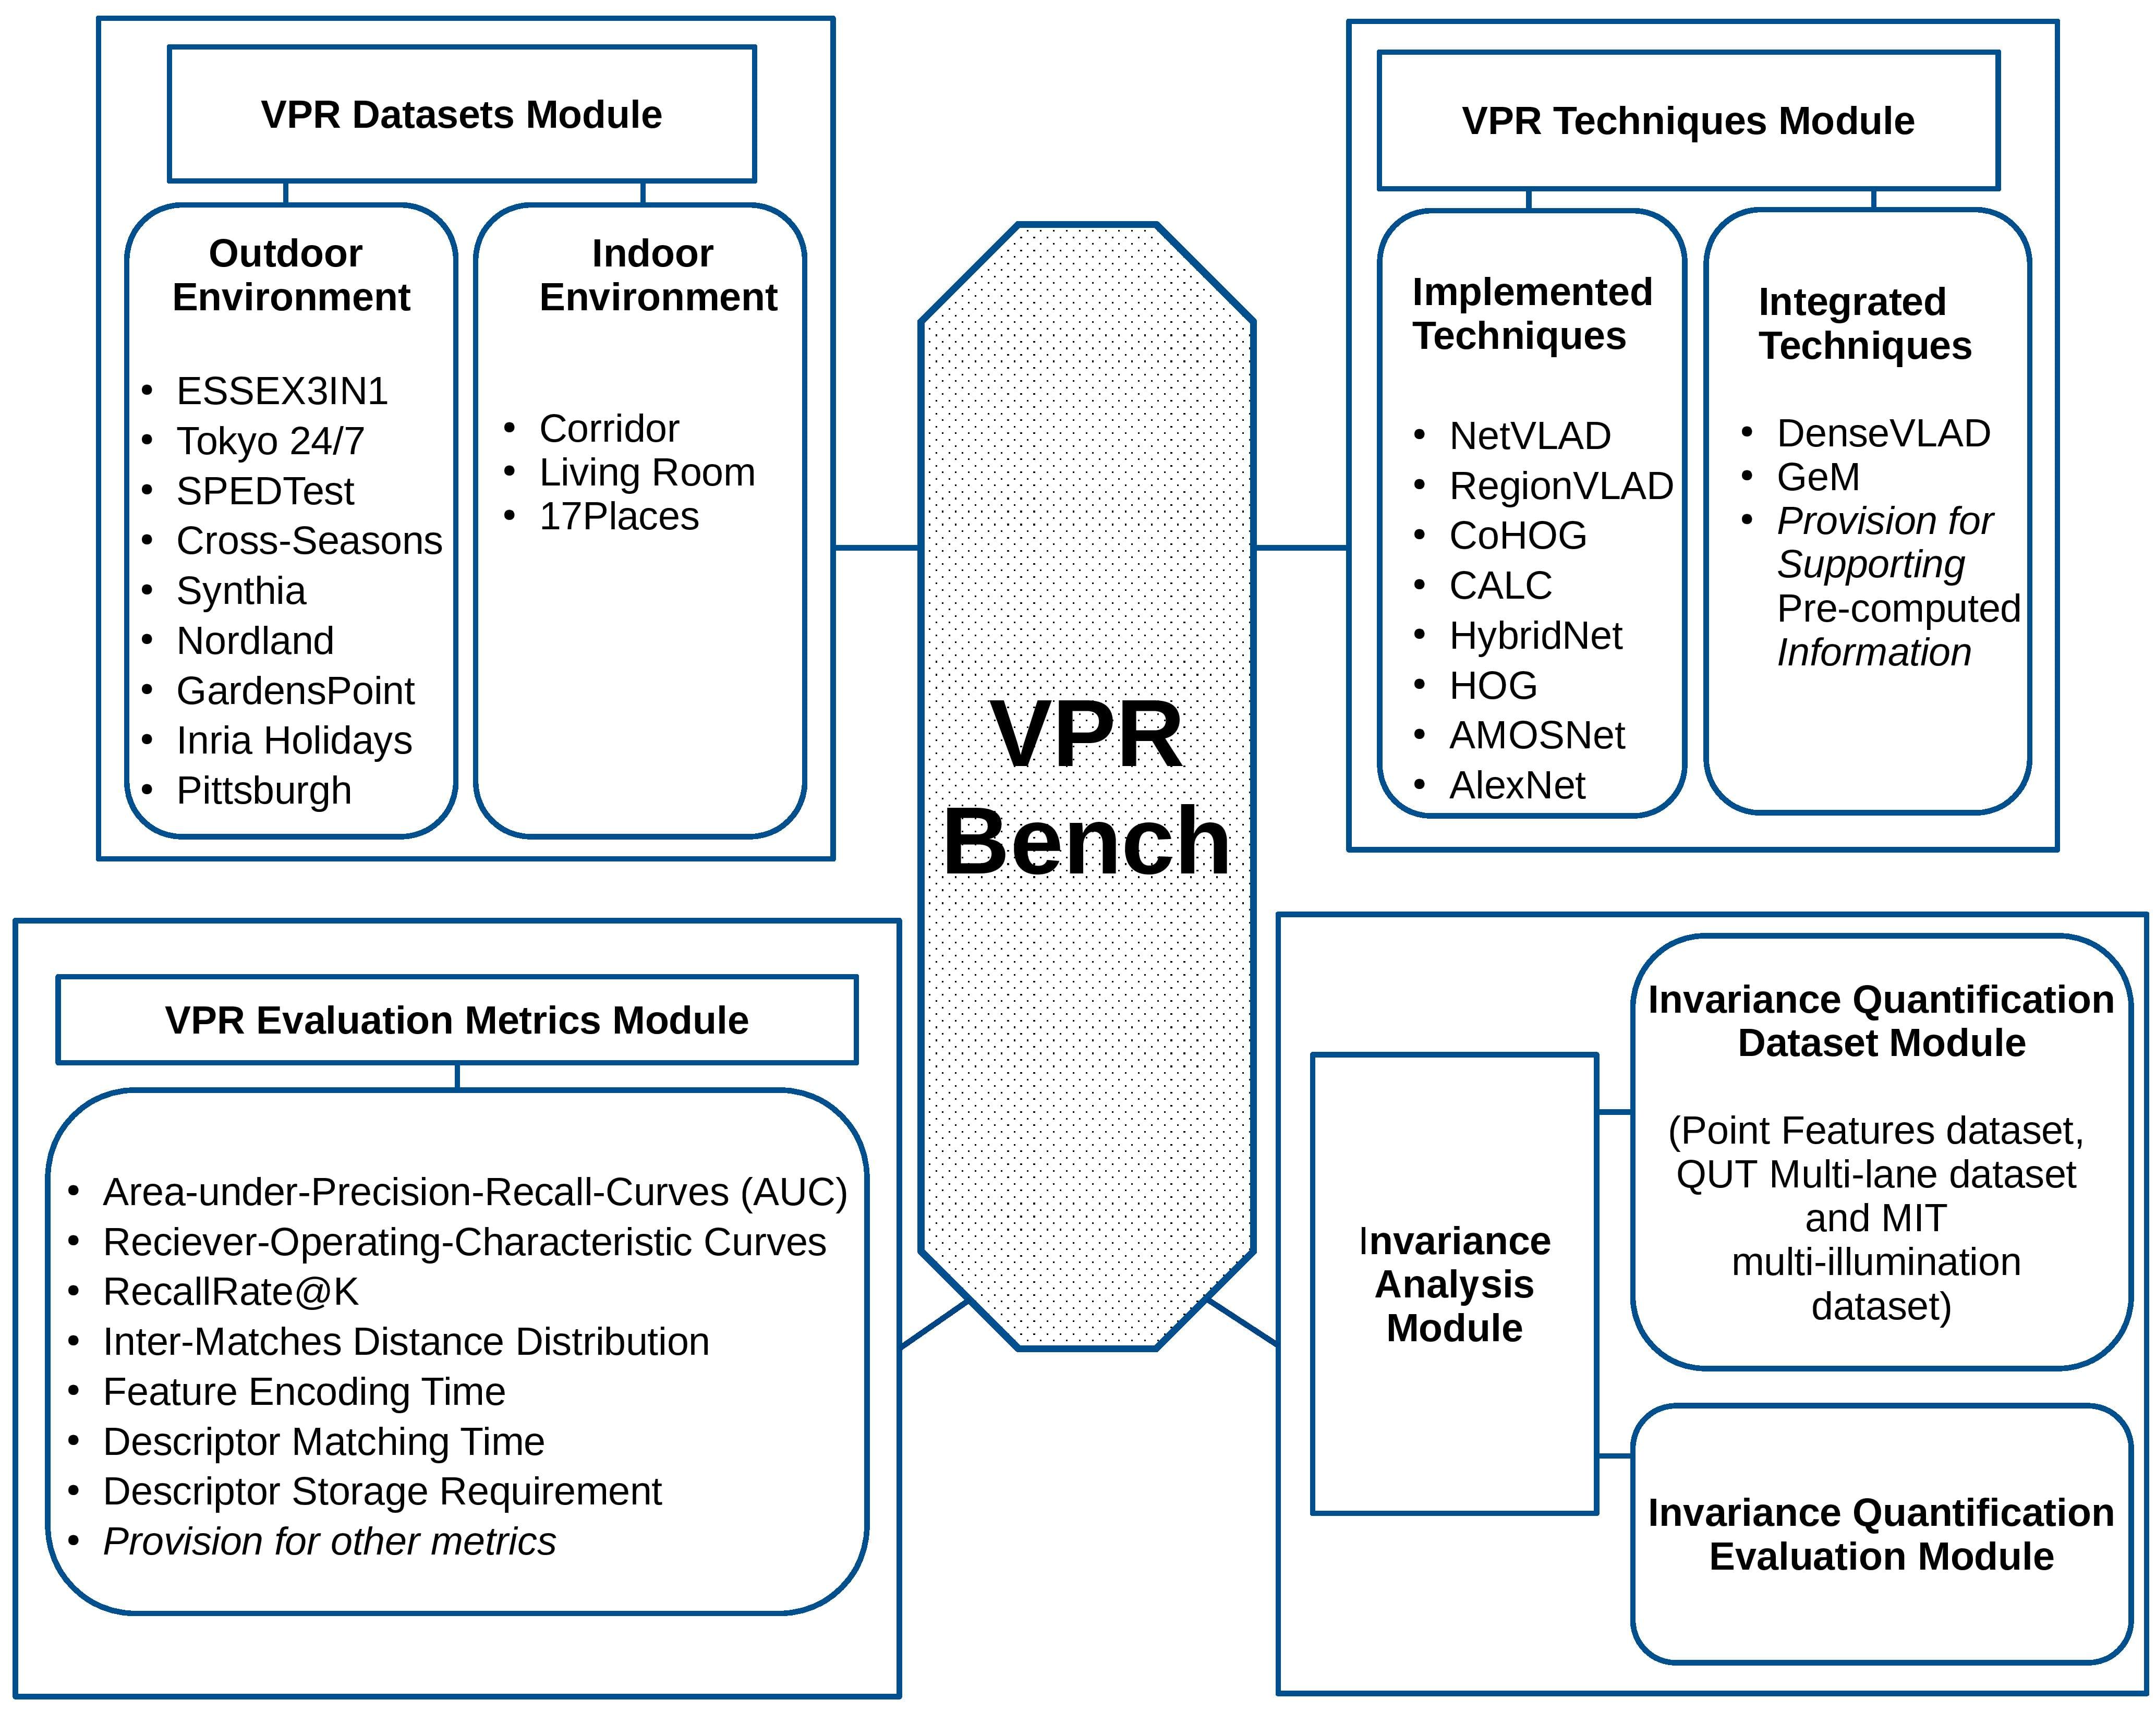 VPR-Bench datasets